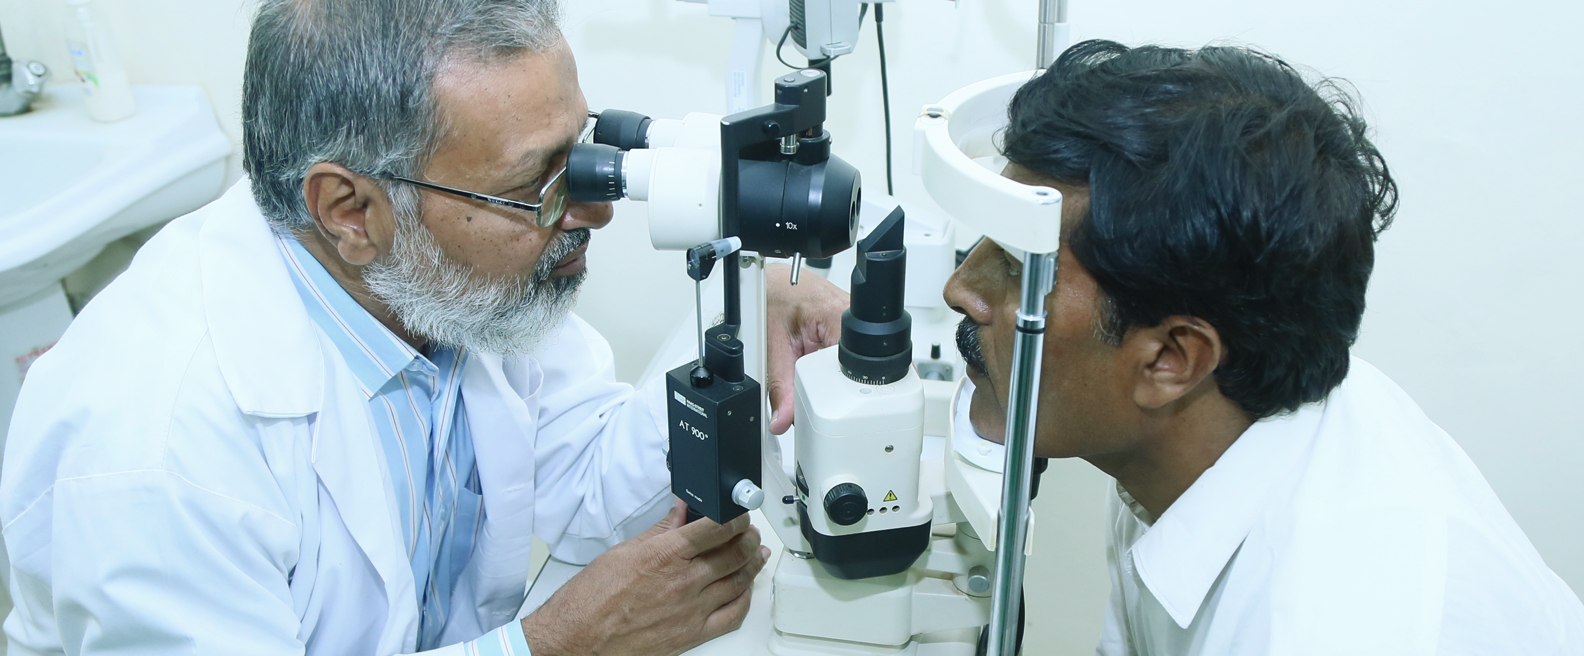 Eye testing being carried out during surgical eye camp at Adhi Punjab